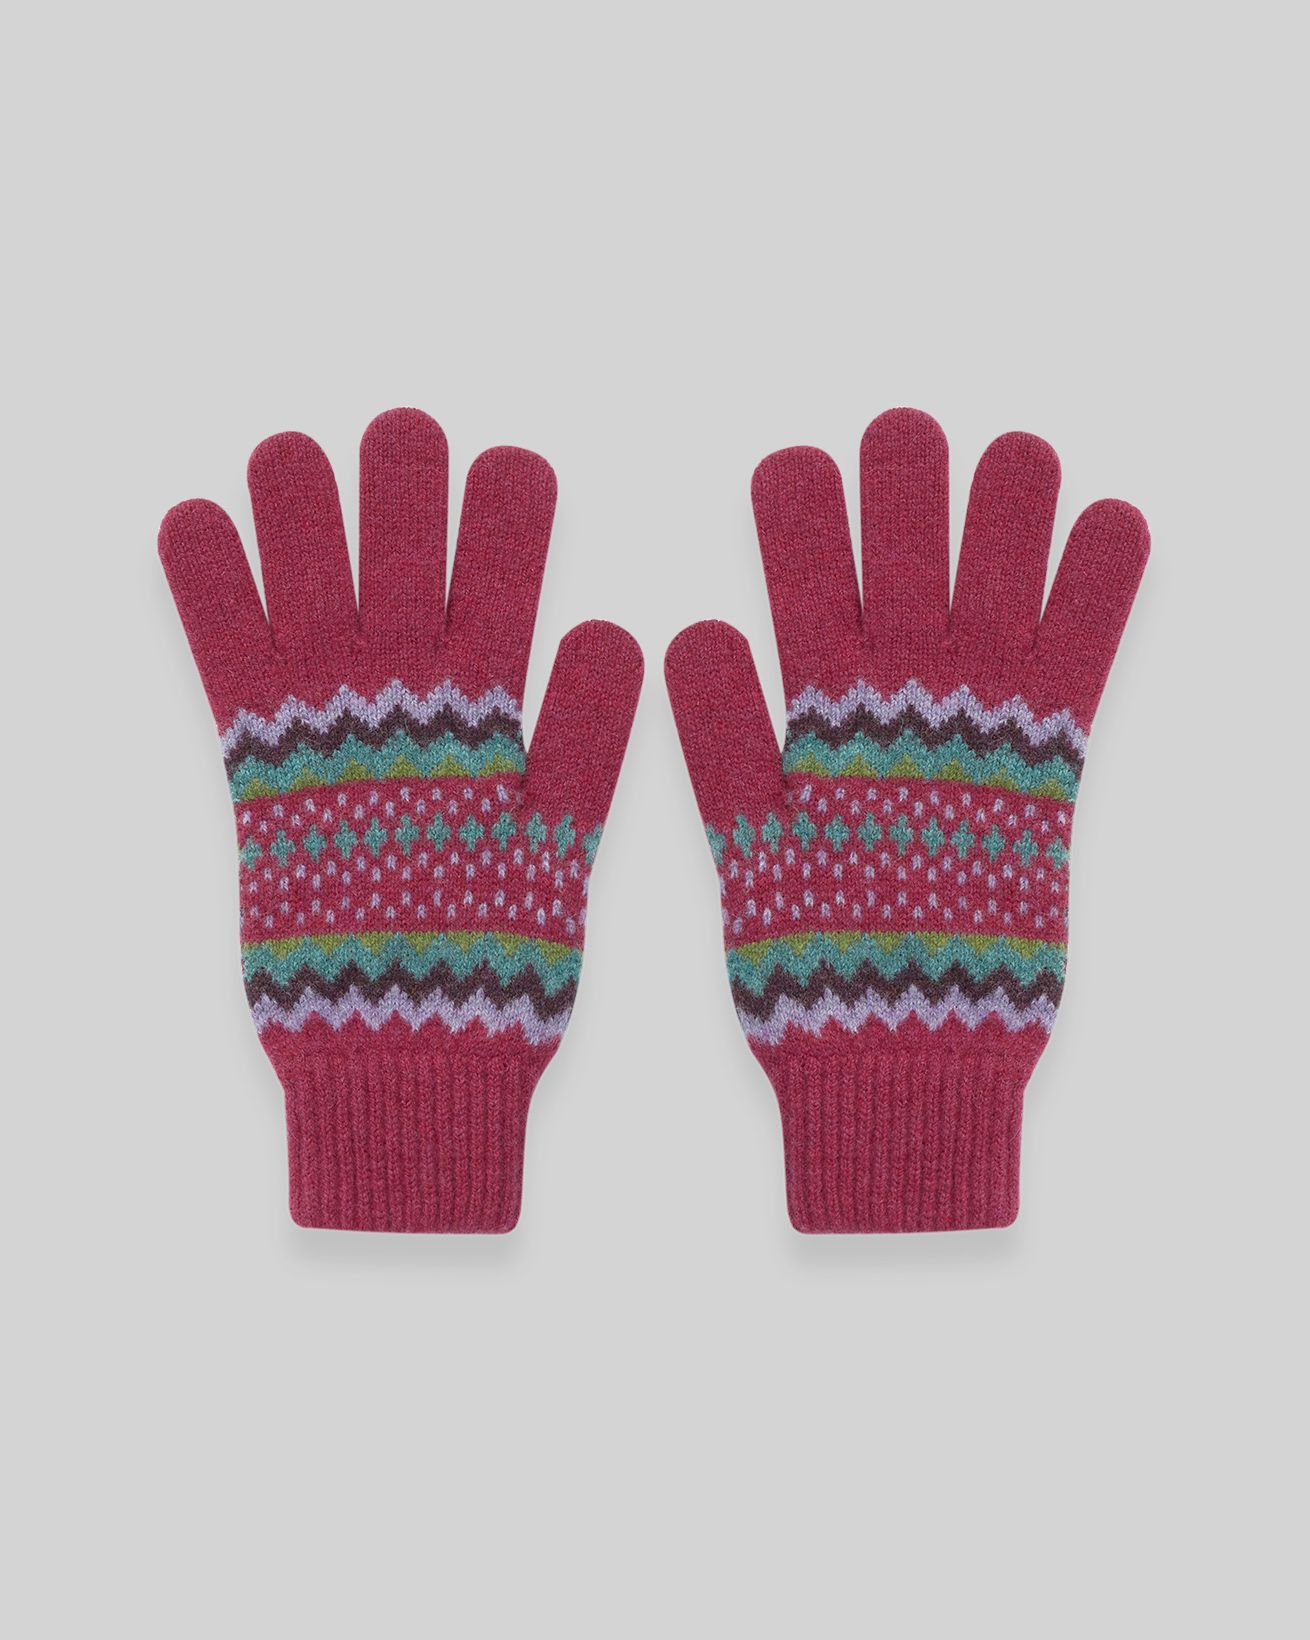 Knitted Gloves for Men 100% Merino Wool Hand Gloves Soft Winter